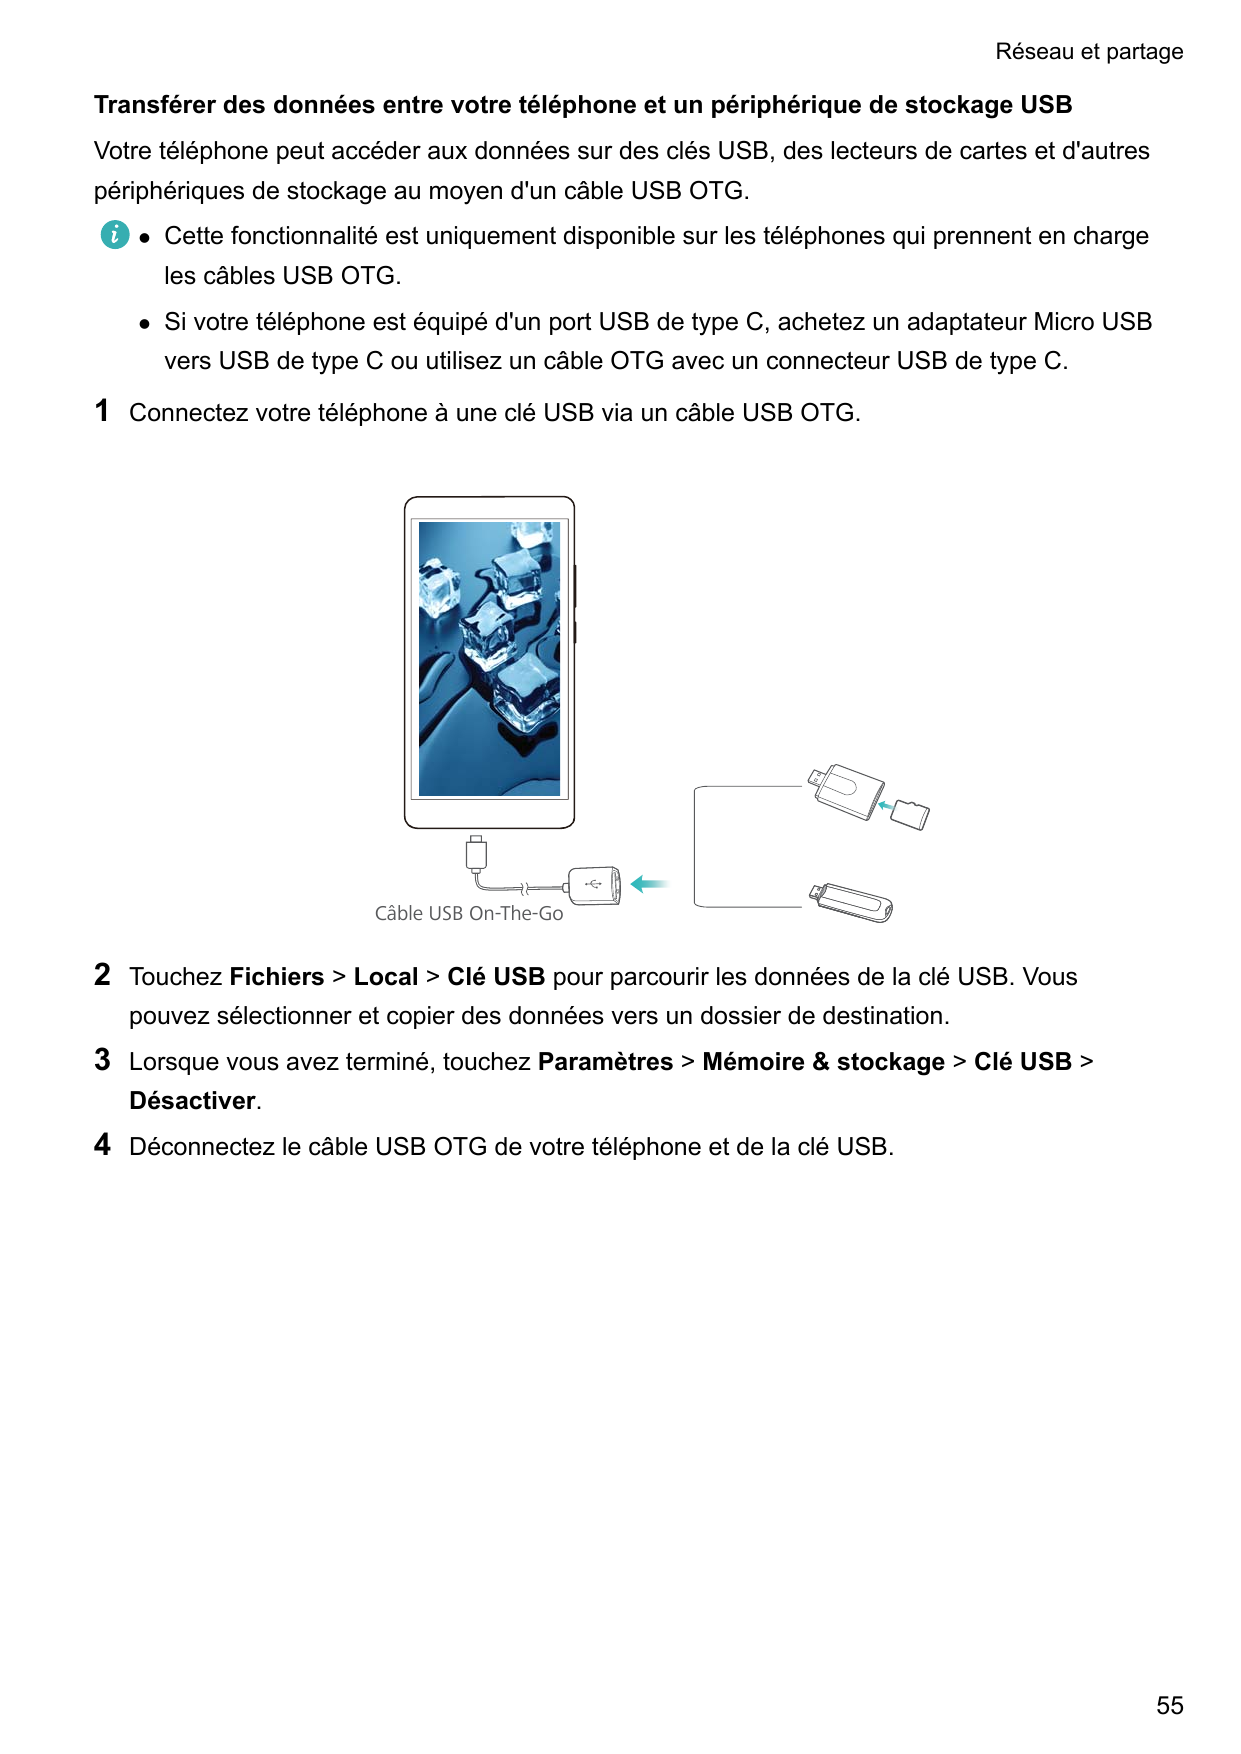 Réseau et partageTransférer des données entre votre téléphone et un périphérique de stockage USBVotre téléphone peut accéder aux